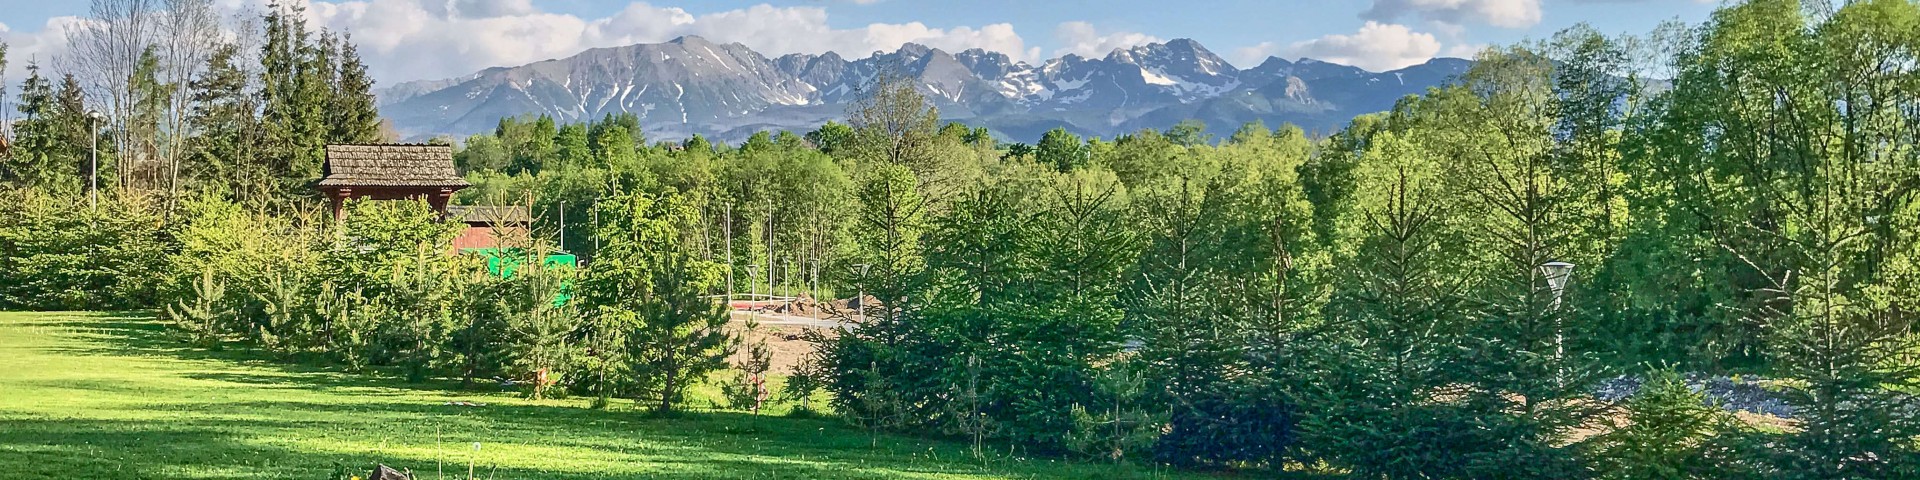 View of Tatra Mountains, Poland